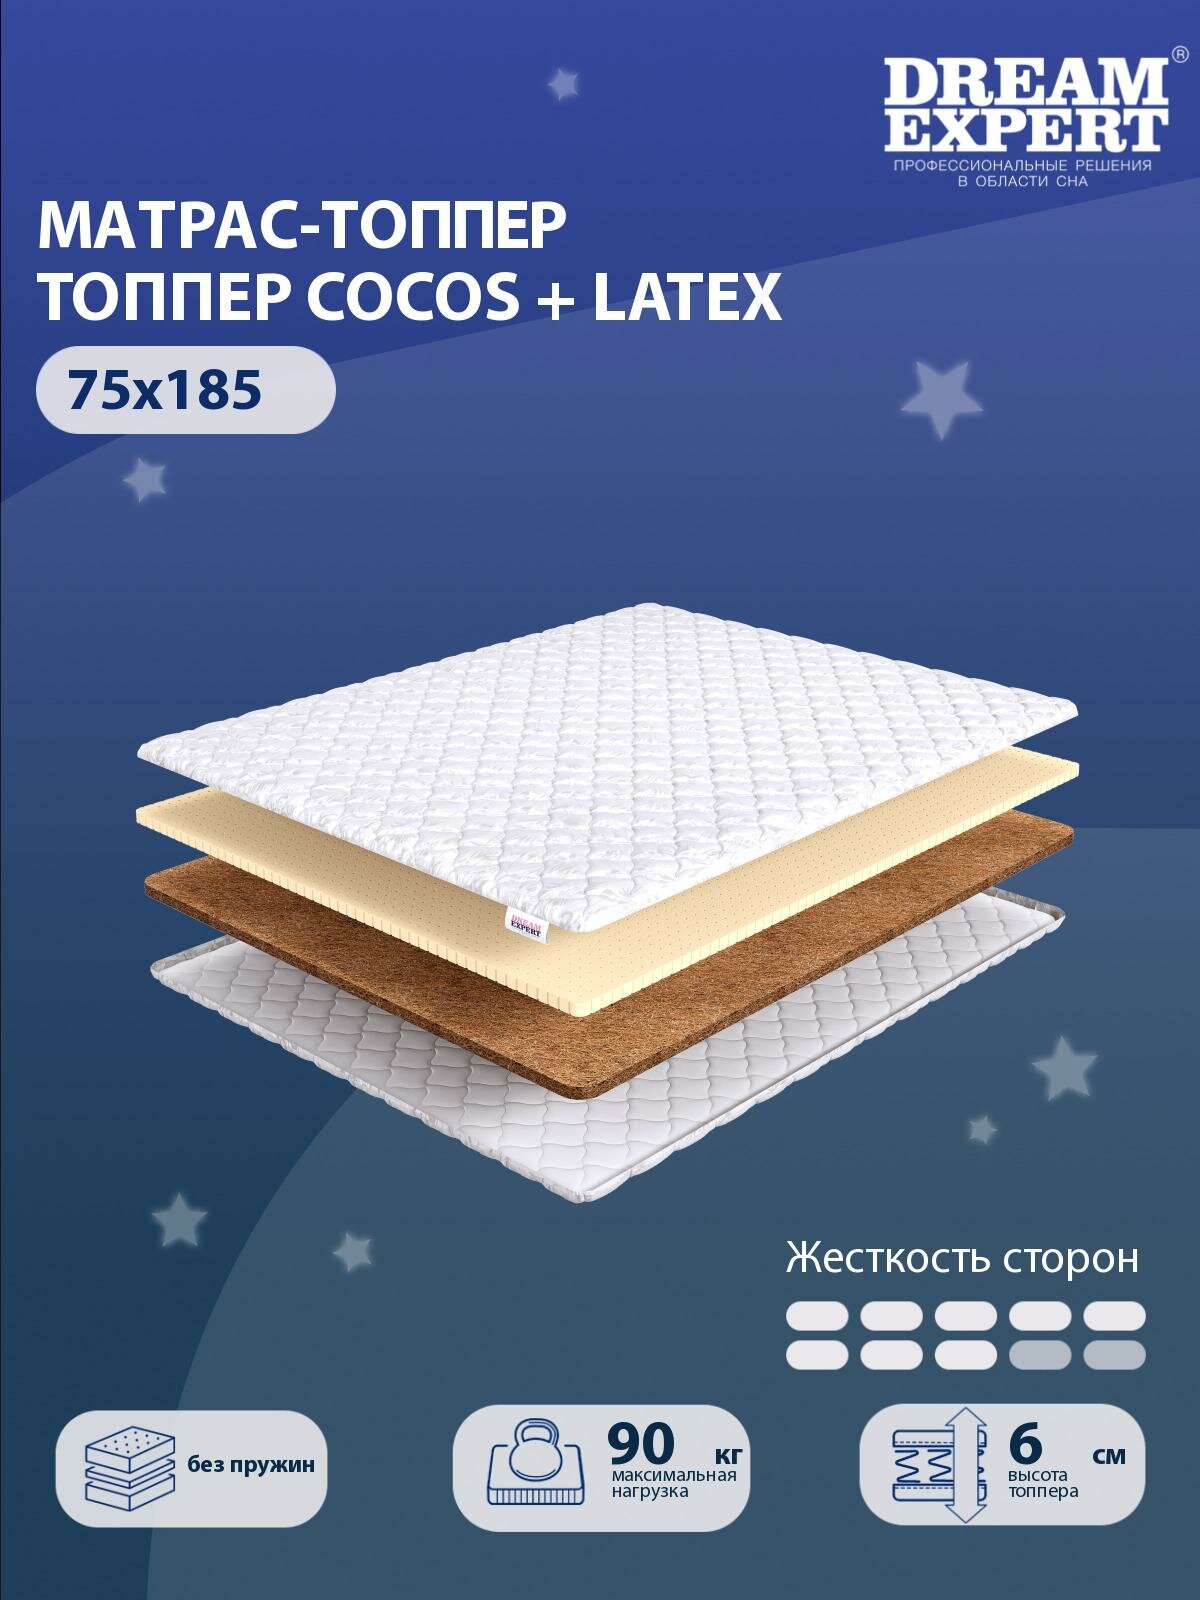 Матрас-топпер, Топпер-наматрасник DreamExpert Cocos + Latex тонкий матрас, на резинке, Беспружинный, хлопковый, на кровать 75x185